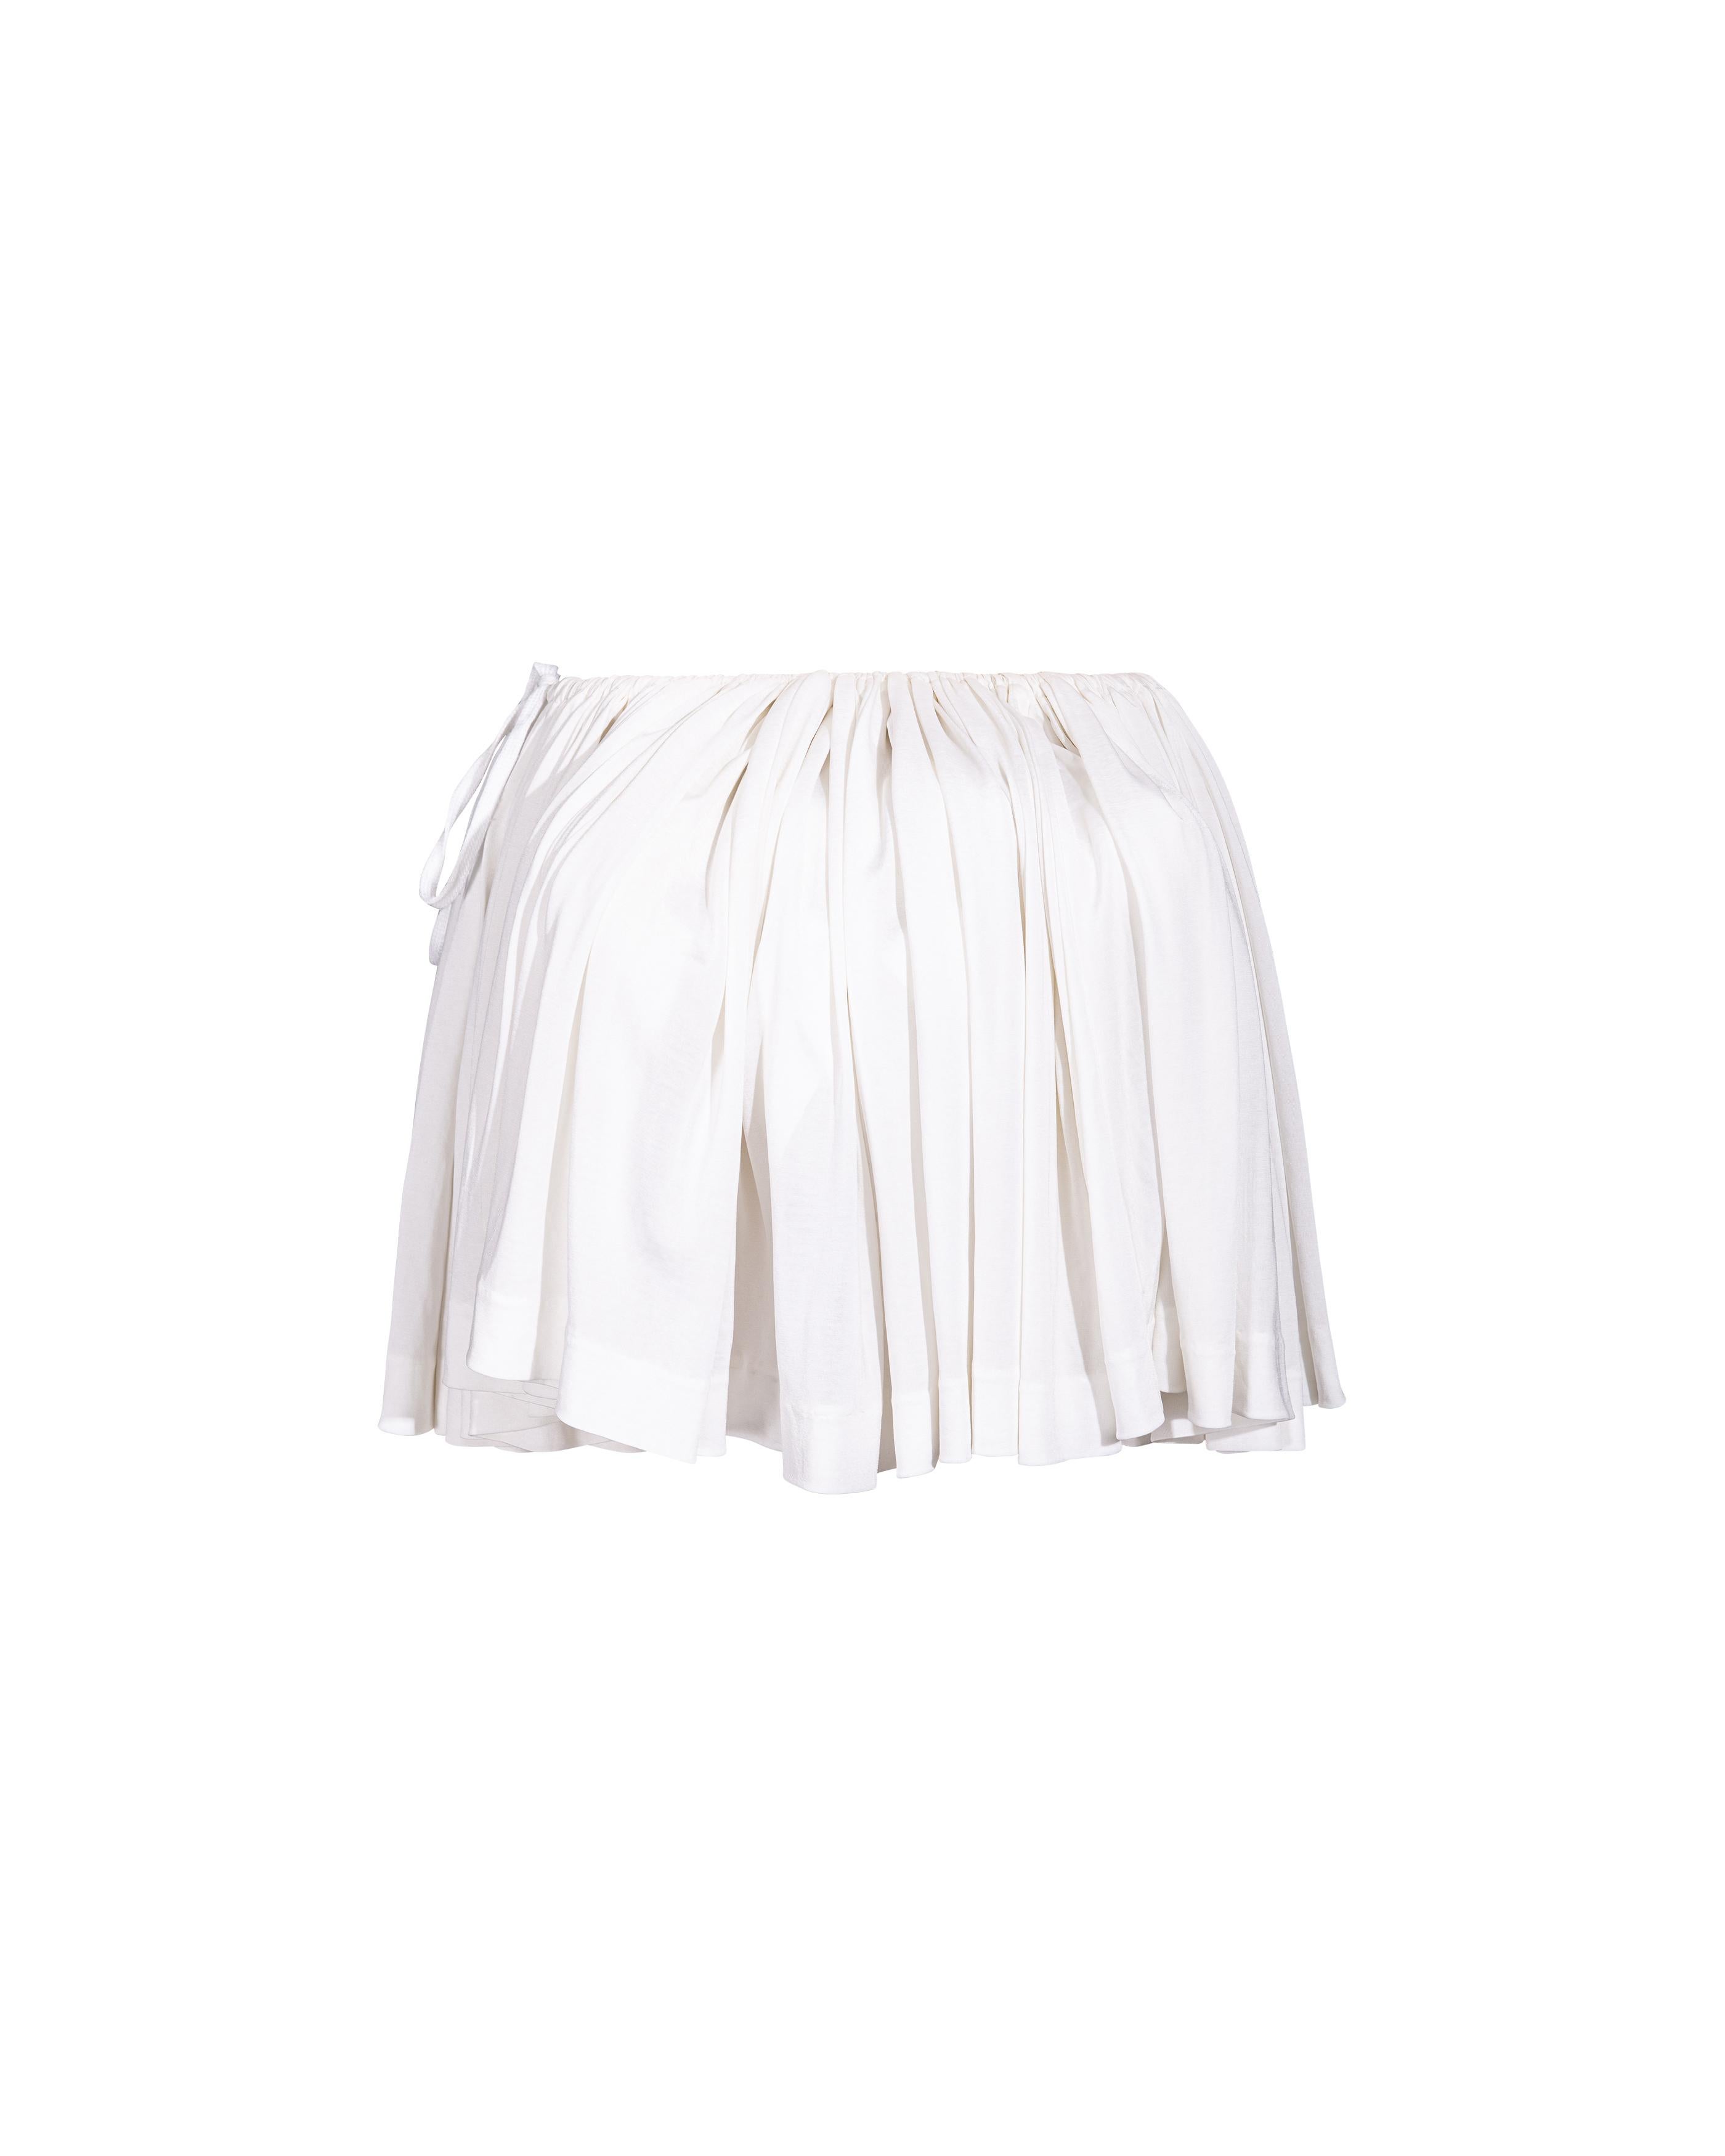 S/S 1988 Vivienne Westwood White Mini jupe avec buste amovible 1